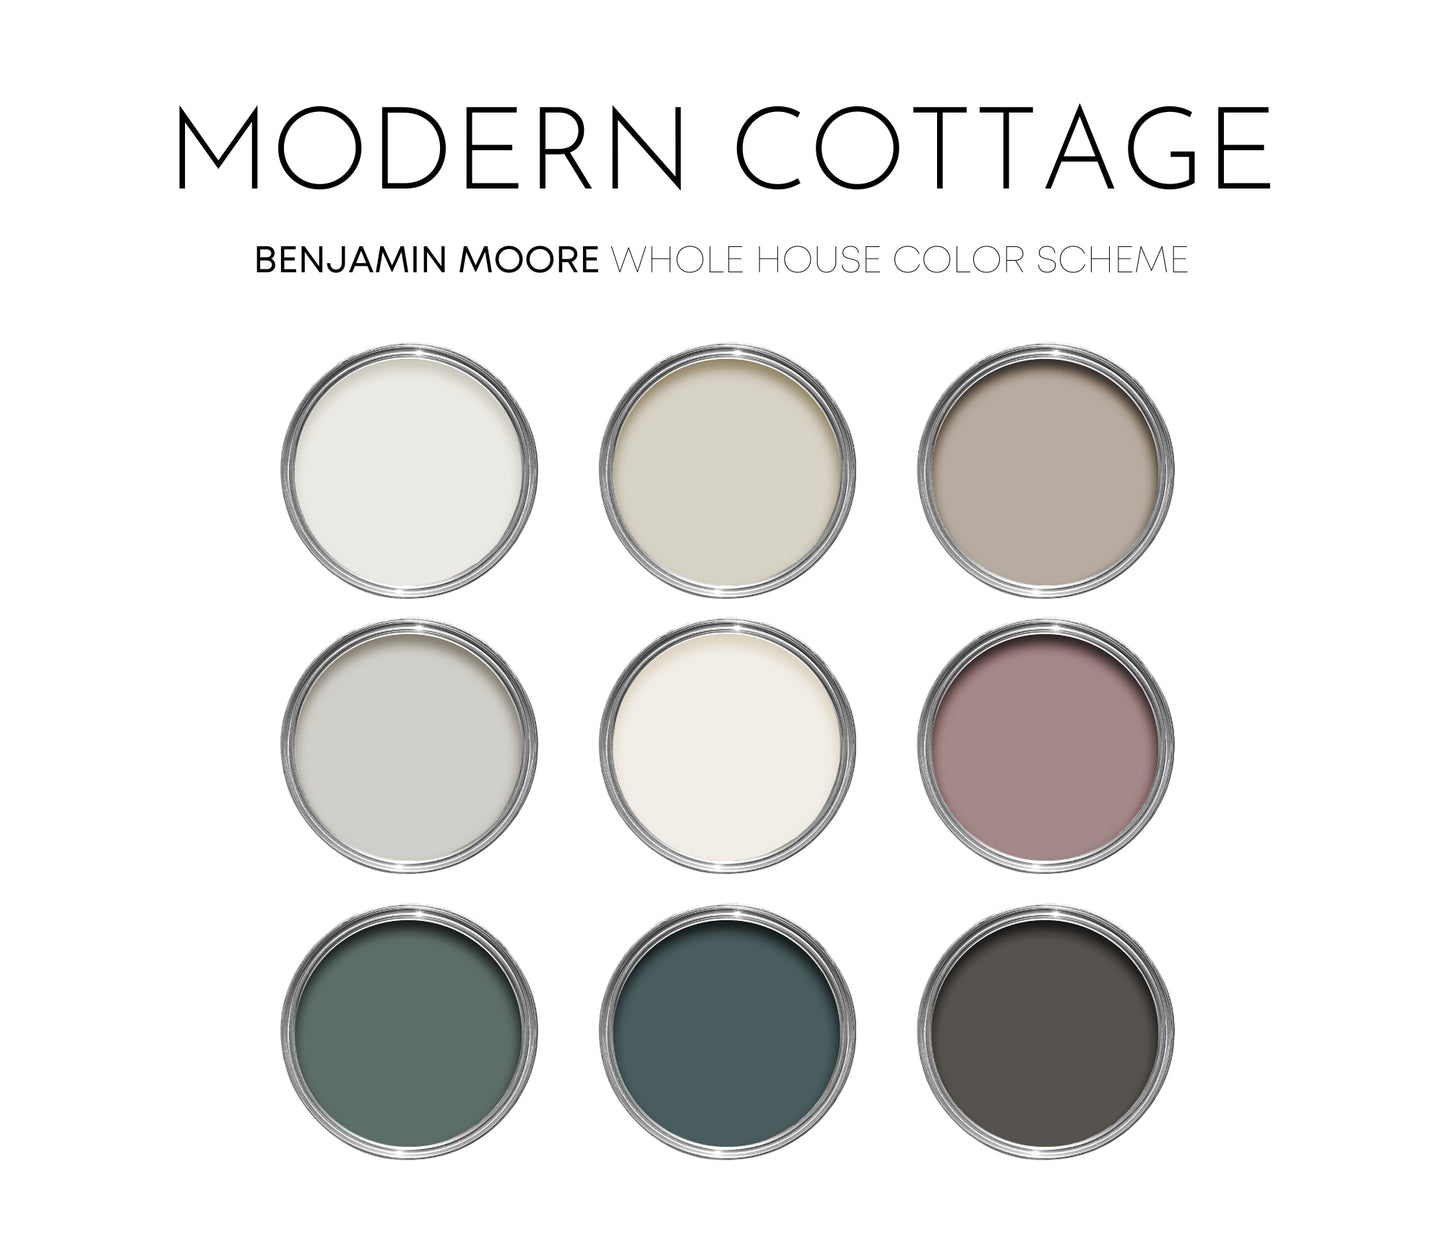 Modern Cottage Benjamin Moore Paint Palette, Warm Neutrals, Interior Paint Colors, Coordinating Interior Design, Color Palette, Jack Pine